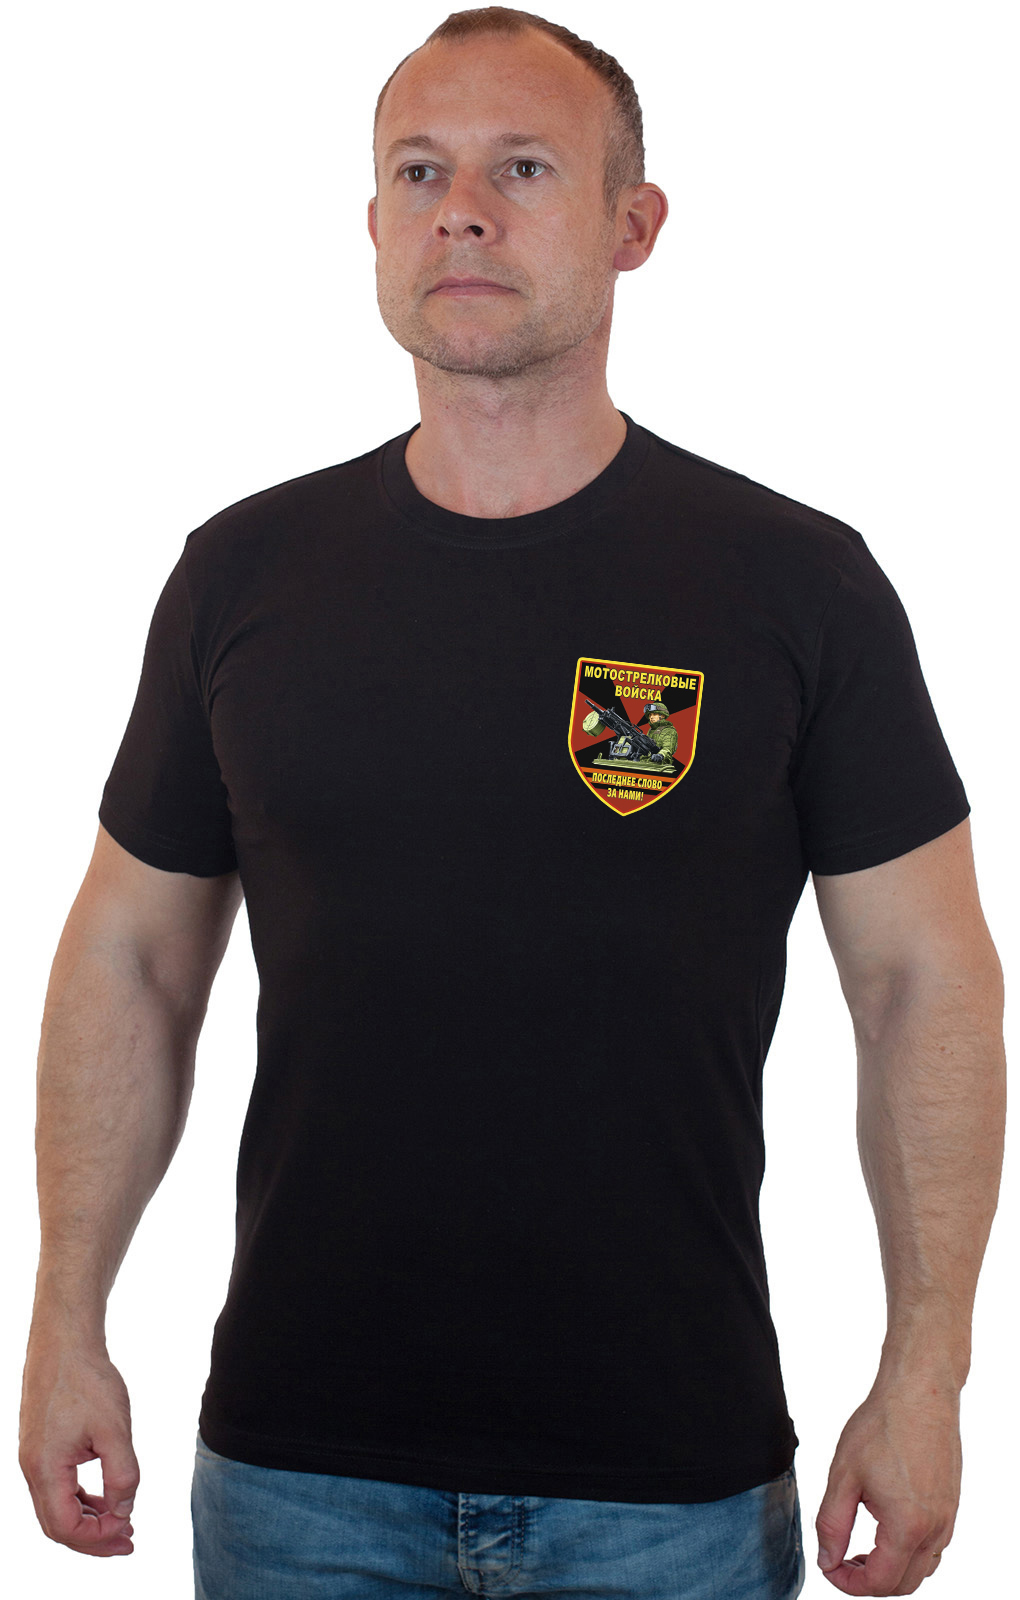 Чёрная футболка "Мотострелковые войска" 